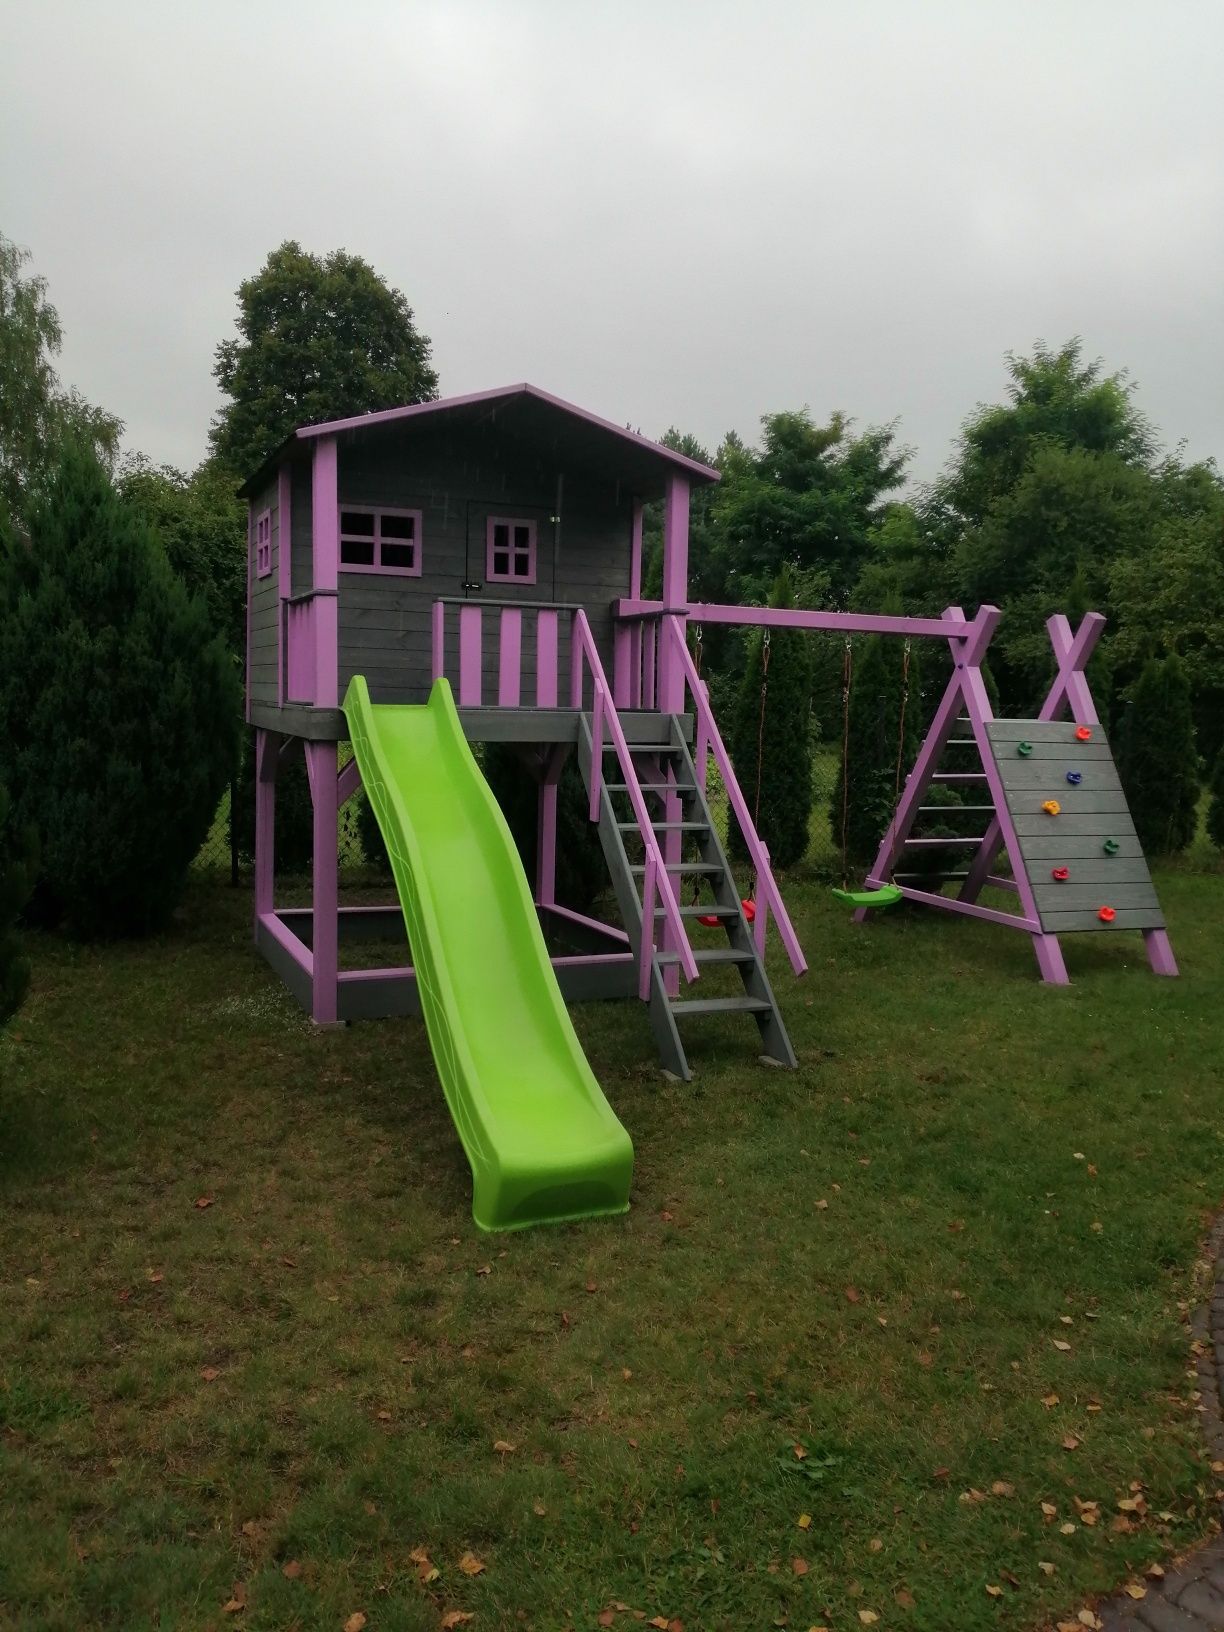 Plac zabaw domek dla dzieci